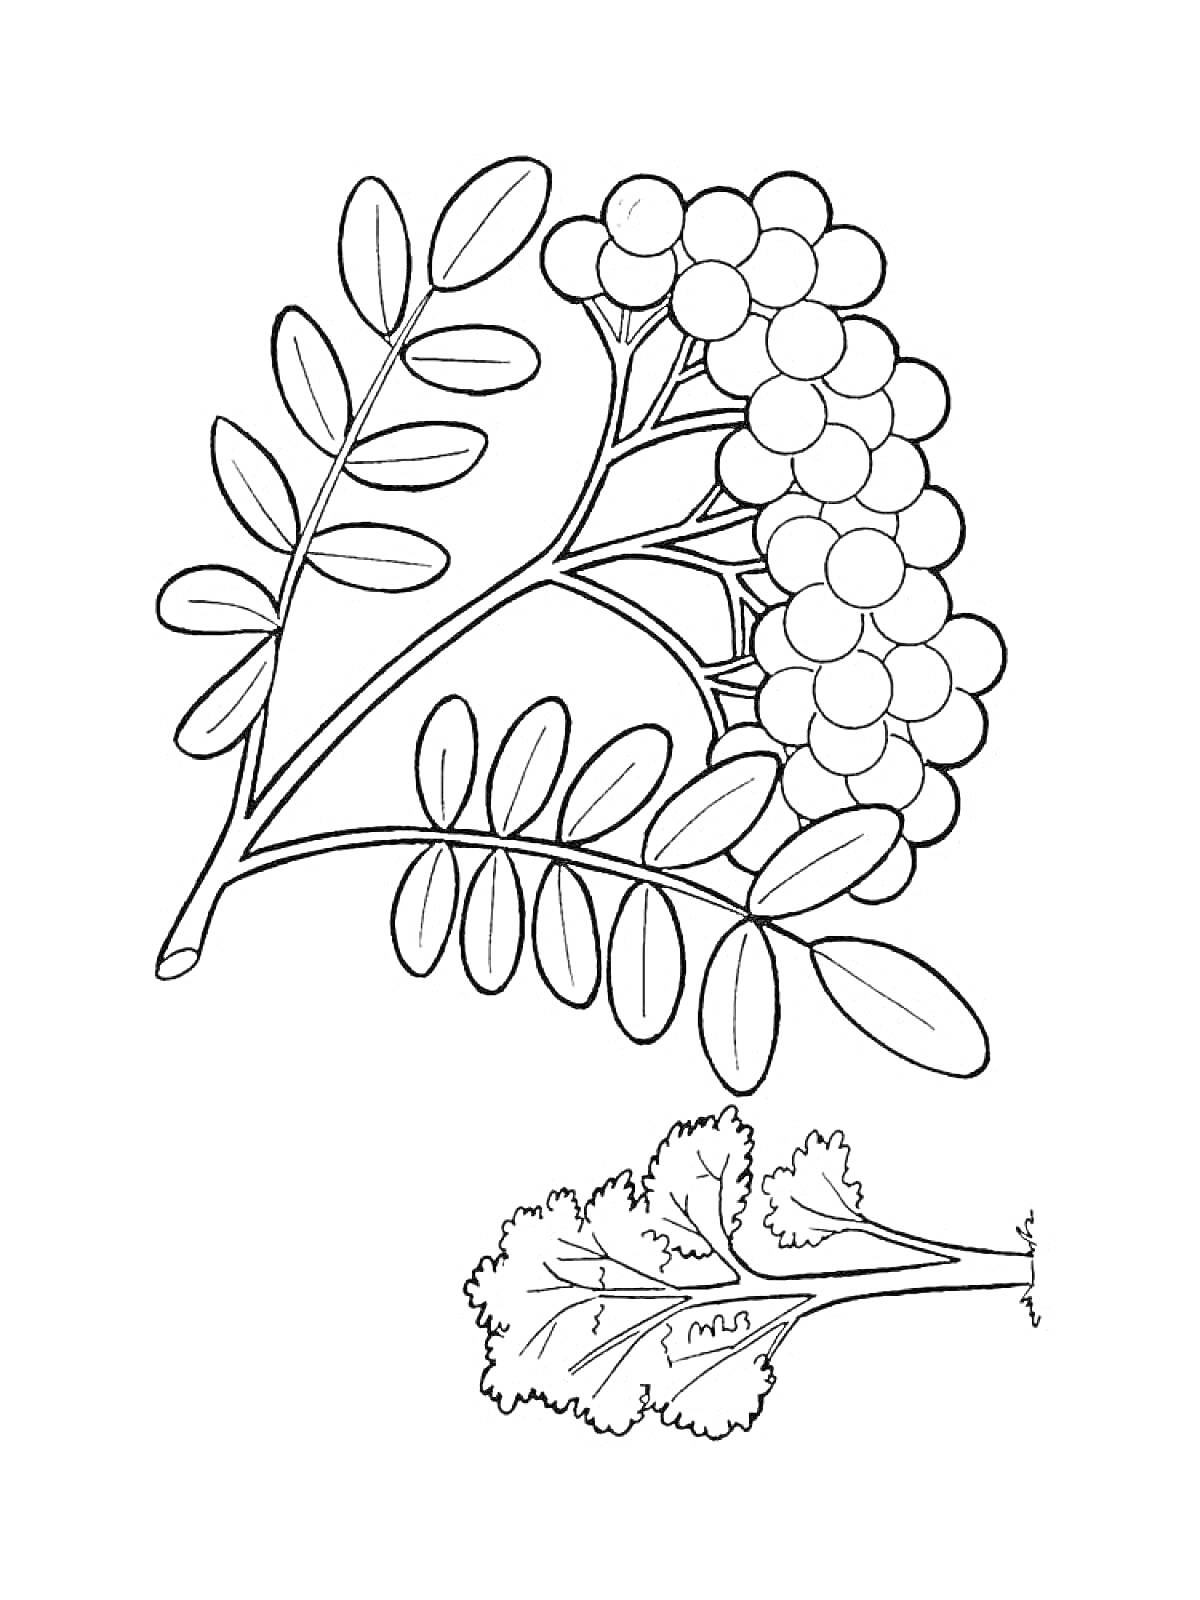 Раскраска Рябиновая ветка с листьями и ягодами, лист с прожилками отдельно